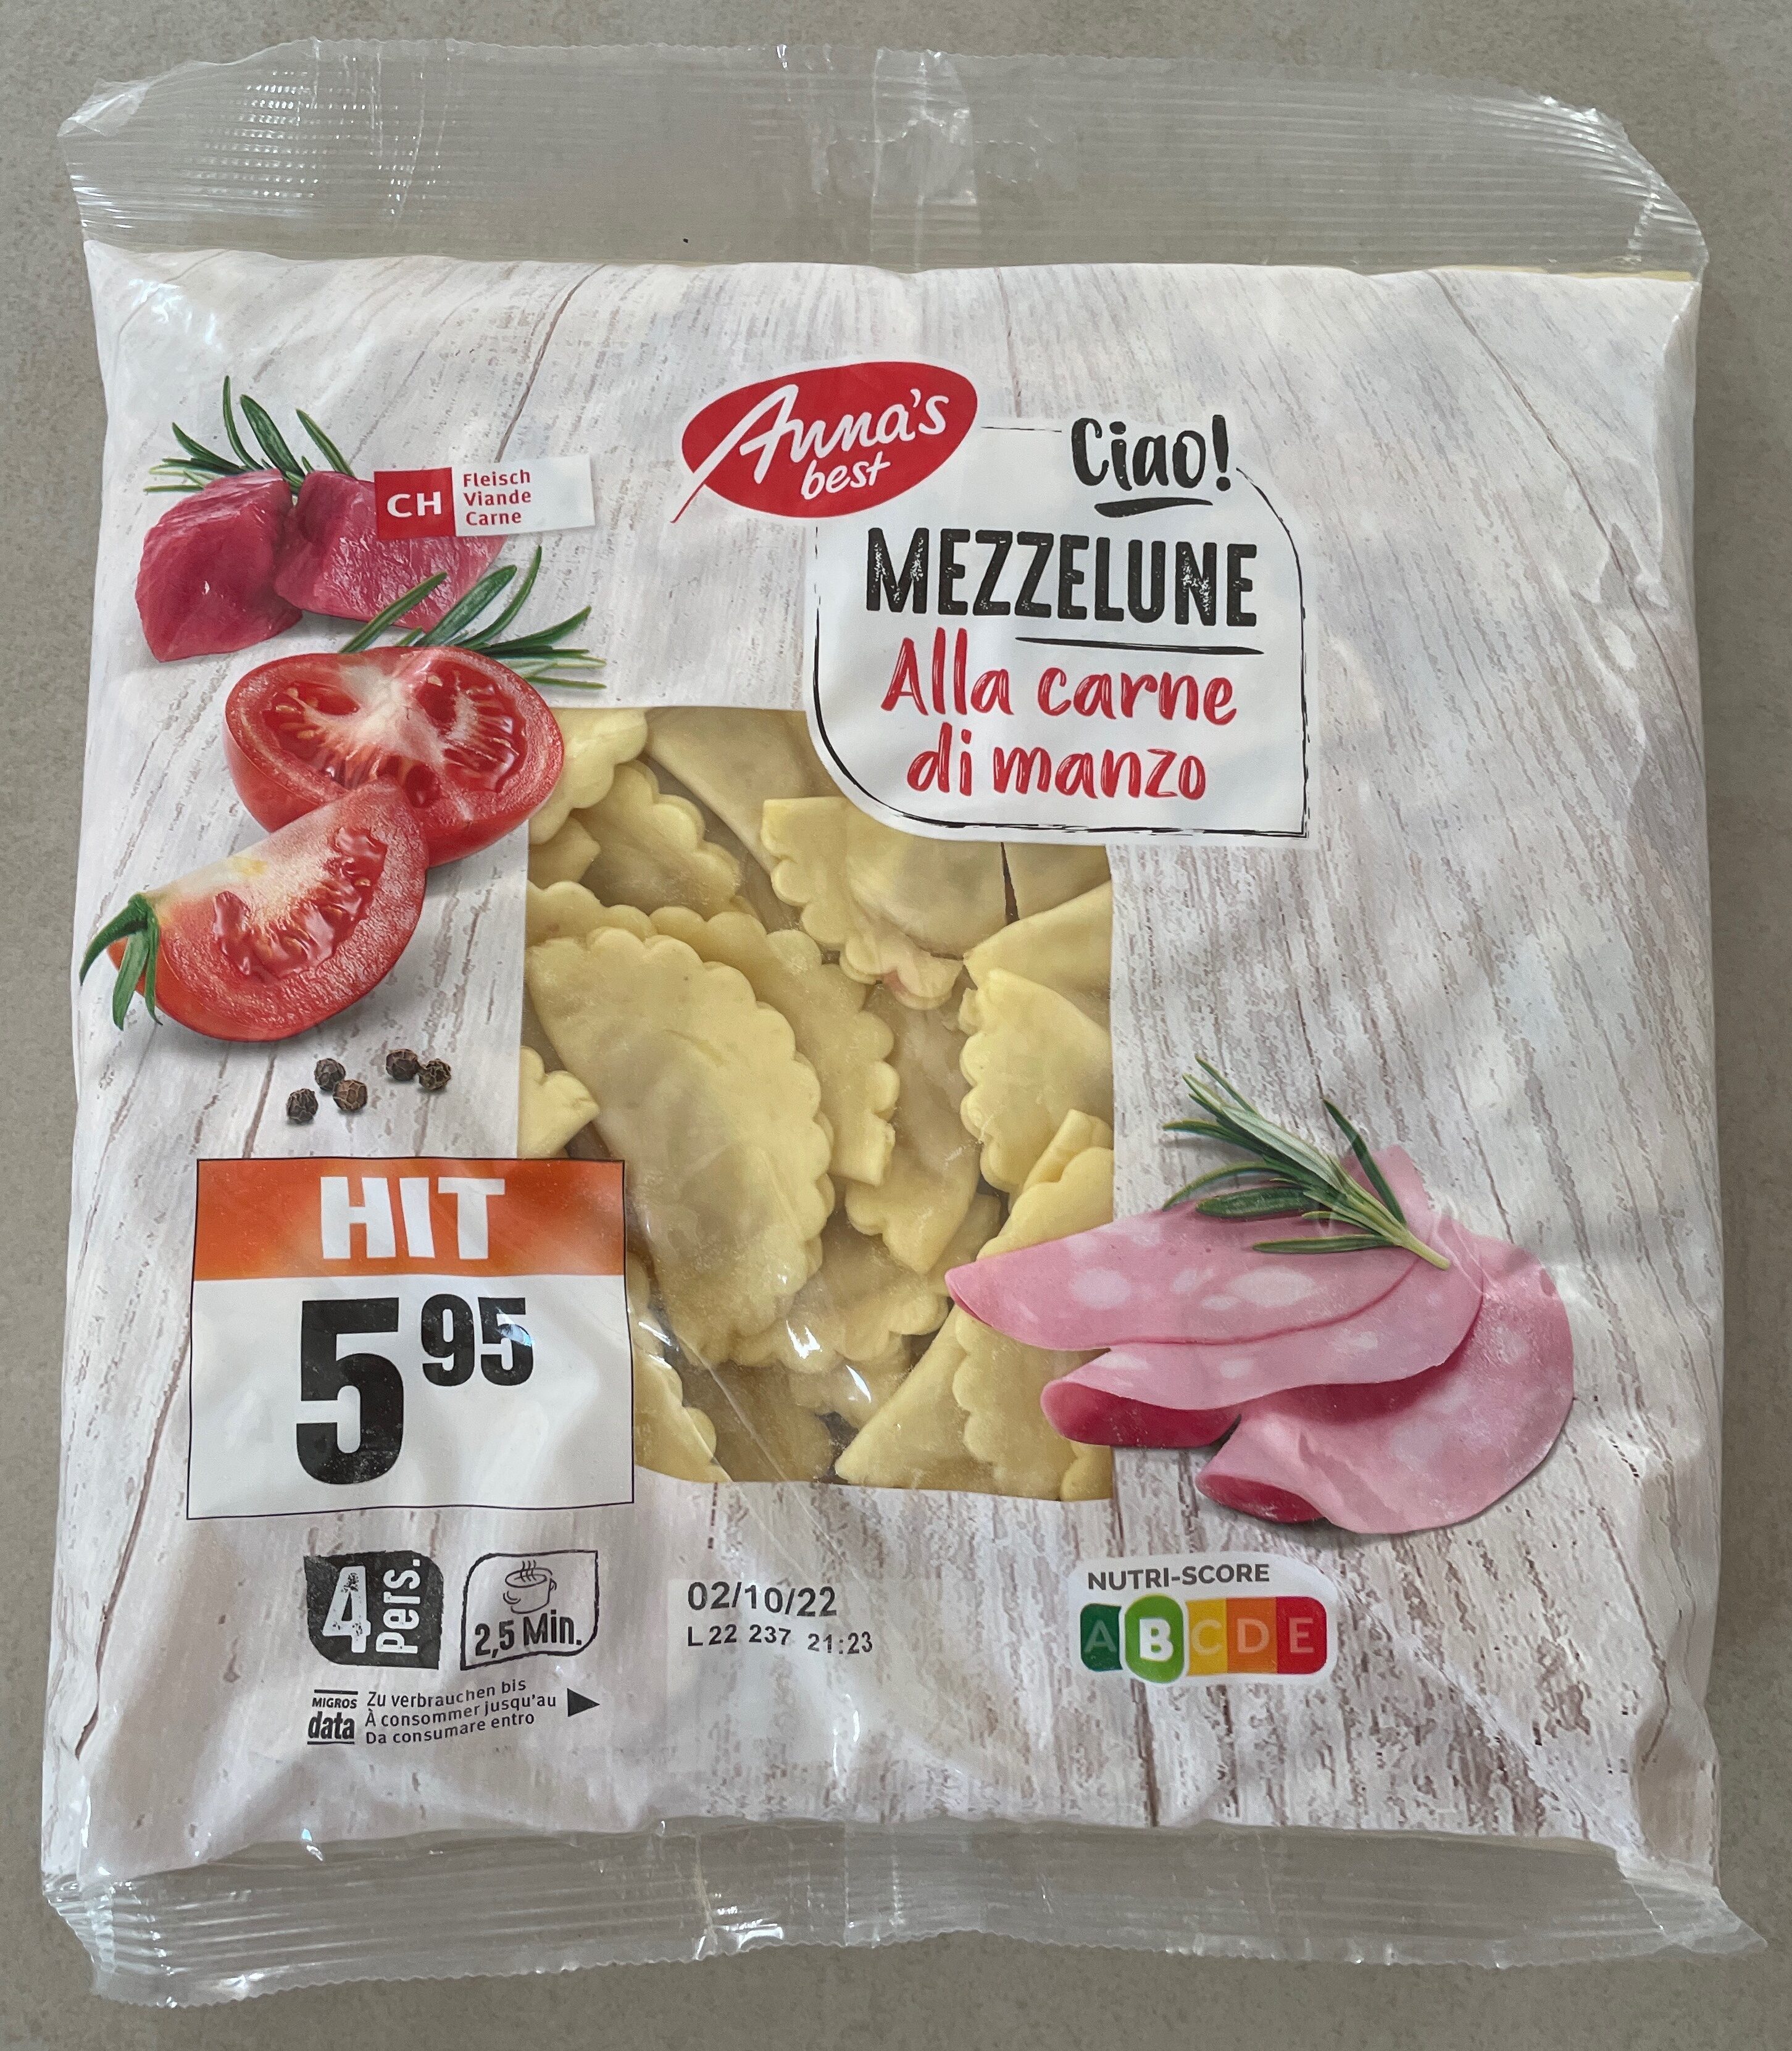 Mezzelune Alla carne di manzo - Product - fr